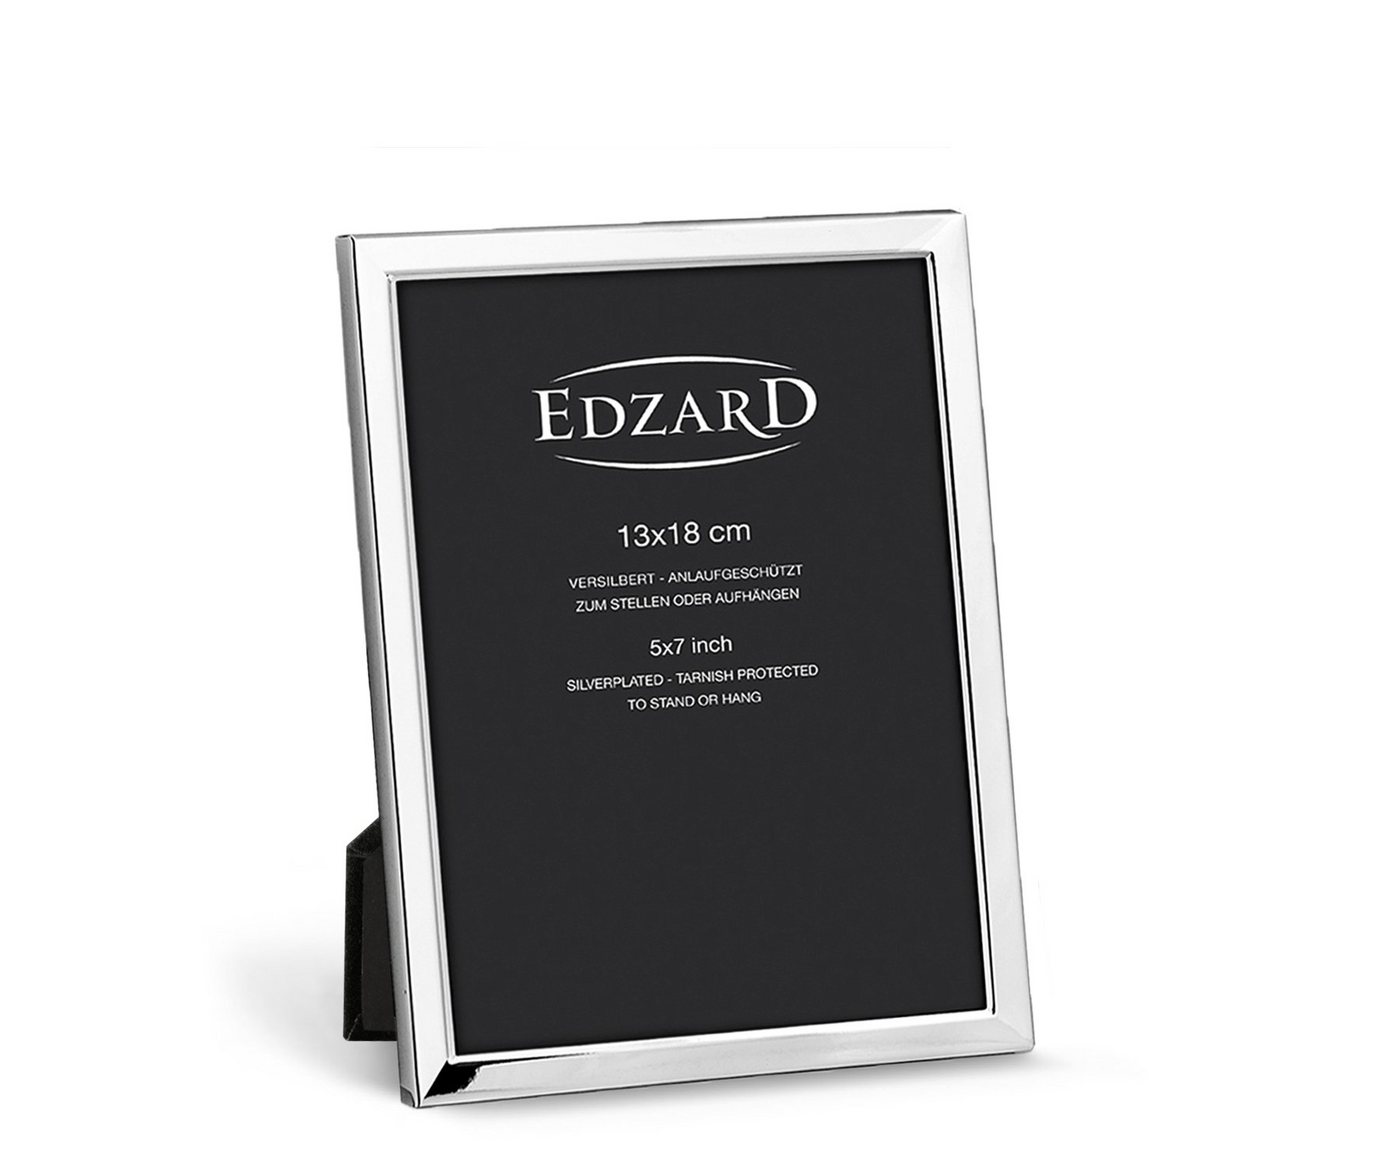 EDZARD Bilderrahmen Bergamo, versilbert und anlaufgeschützt, für 13x18 cm Bilder - Fotorahmen von EDZARD